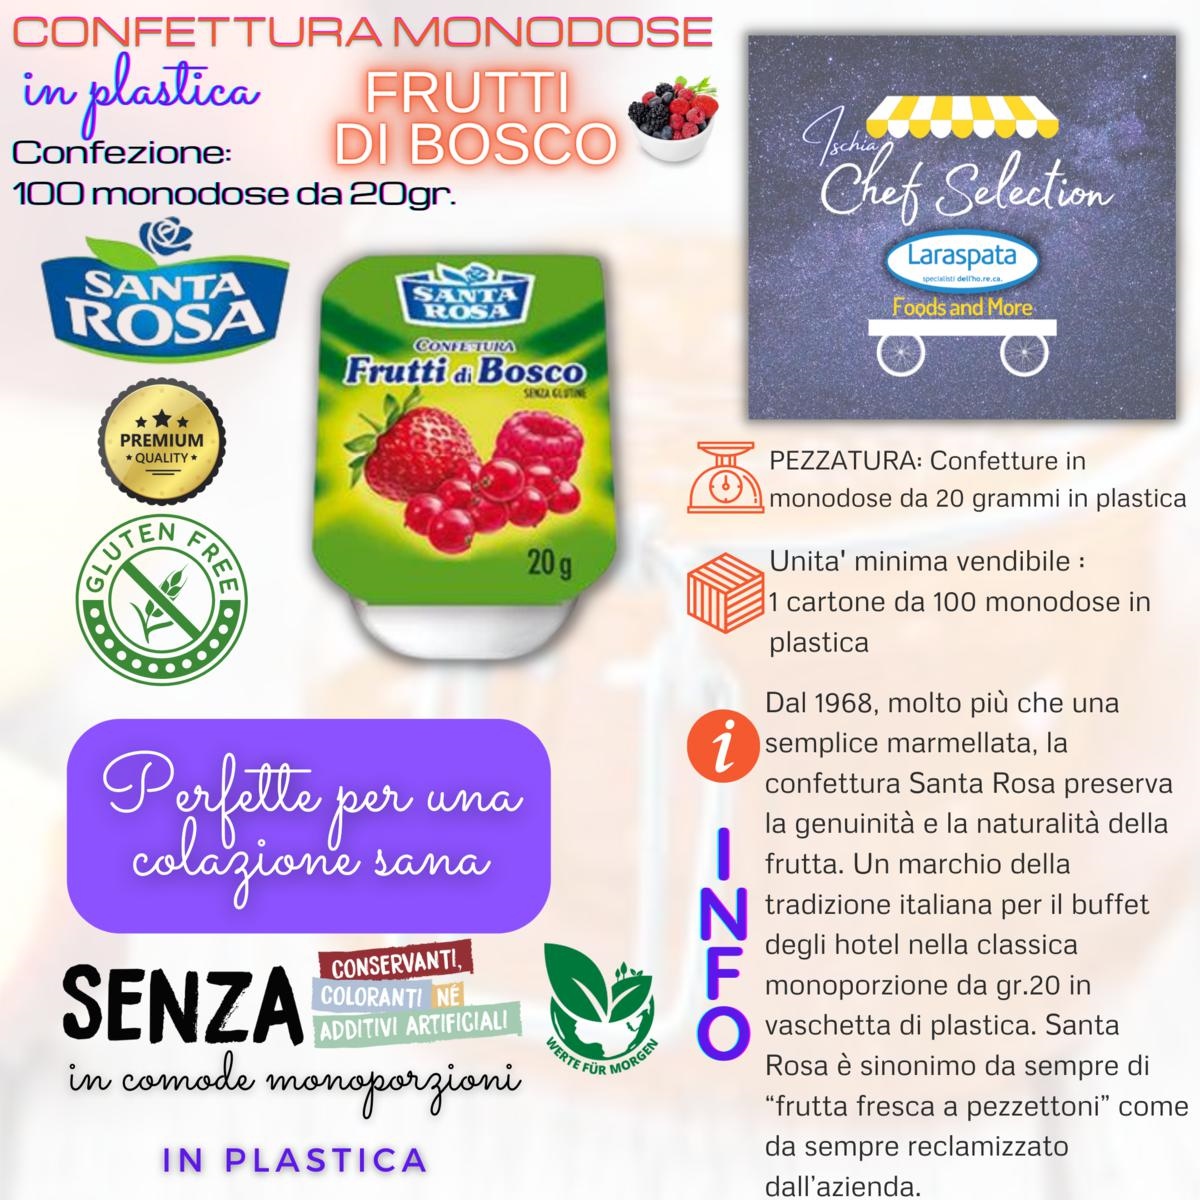 Confettura ai frutti di bosco Santa Rosa  Porzioni monodose - SNACK -  Renato Laraspata & C sas